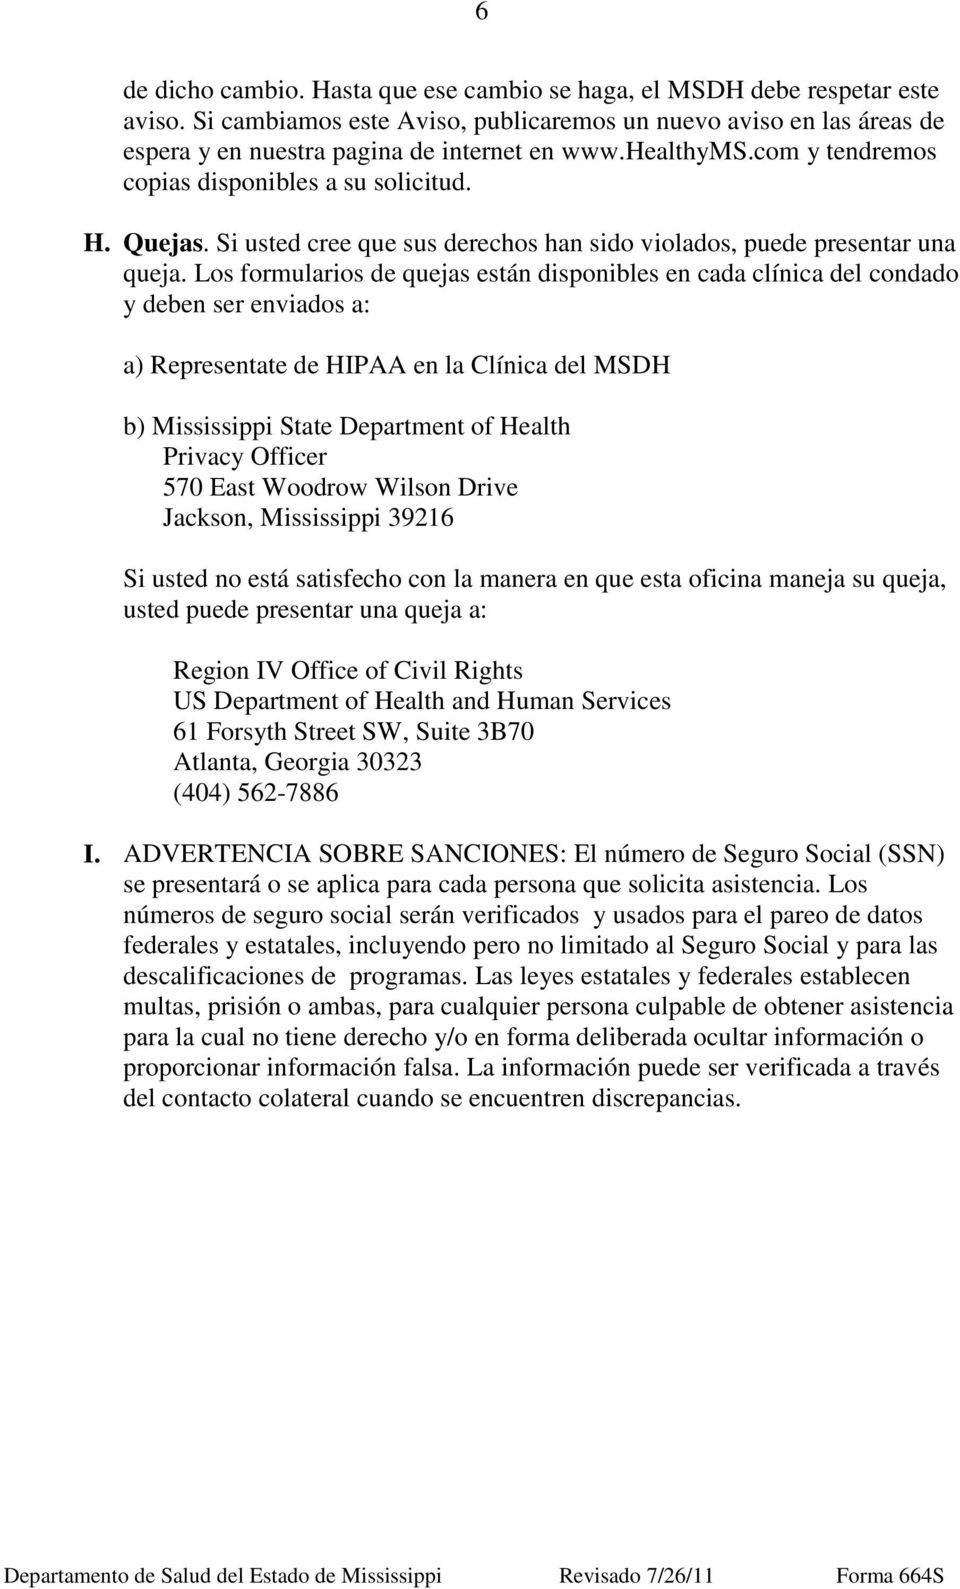 Los formularios de quejas están disponibles en cada clínica del condado y deben ser enviados a: a) Representate de HIPAA en la Clínica del MSDH b) Mississippi State Department of Health Privacy